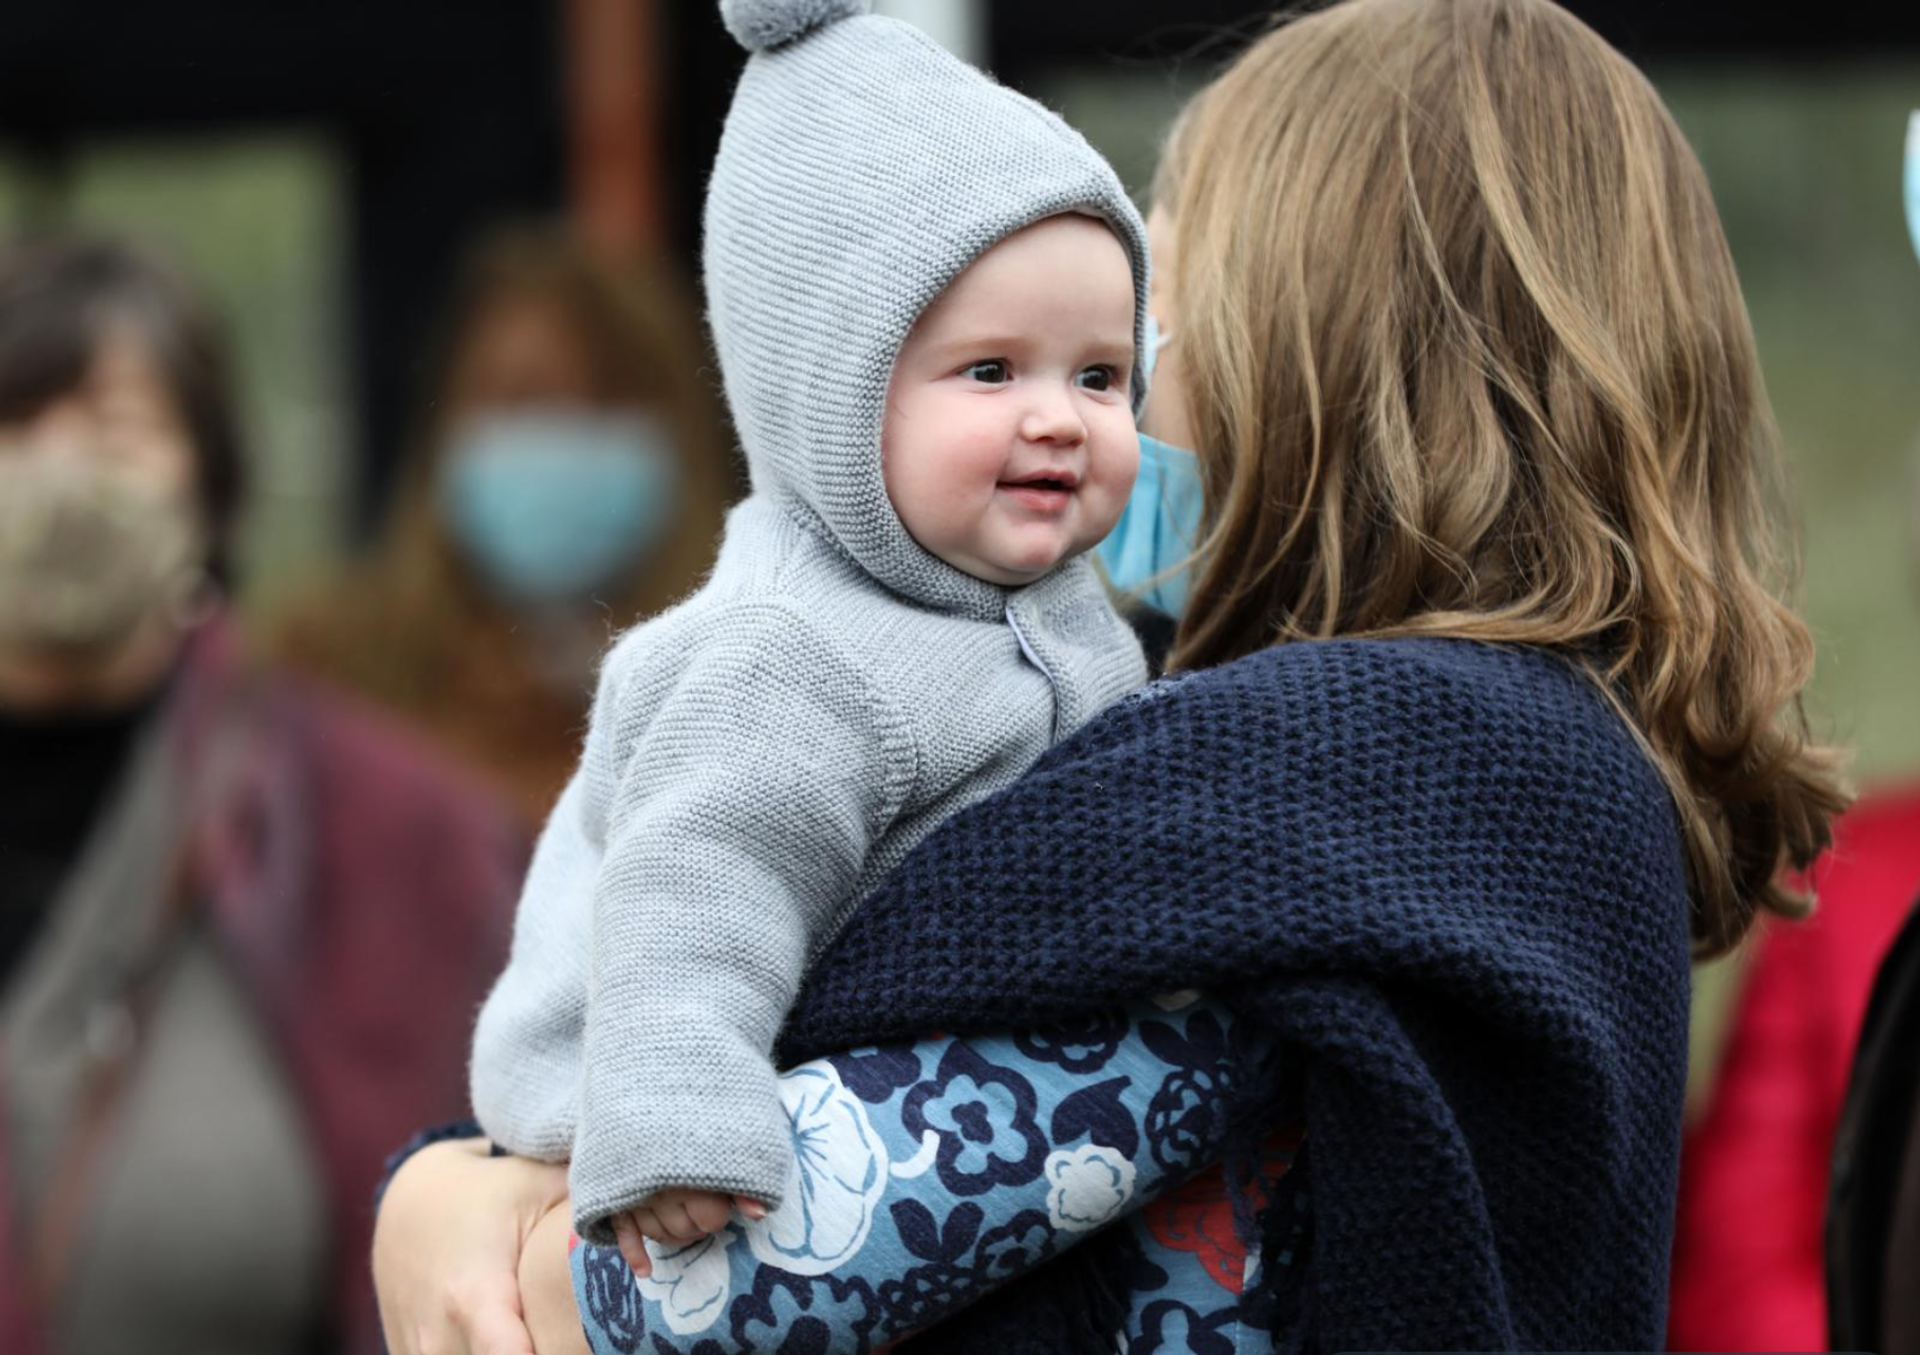 Erfgroothertogin Stéphanie met haar oudste zoon prins Charles op haar arm in 2020.